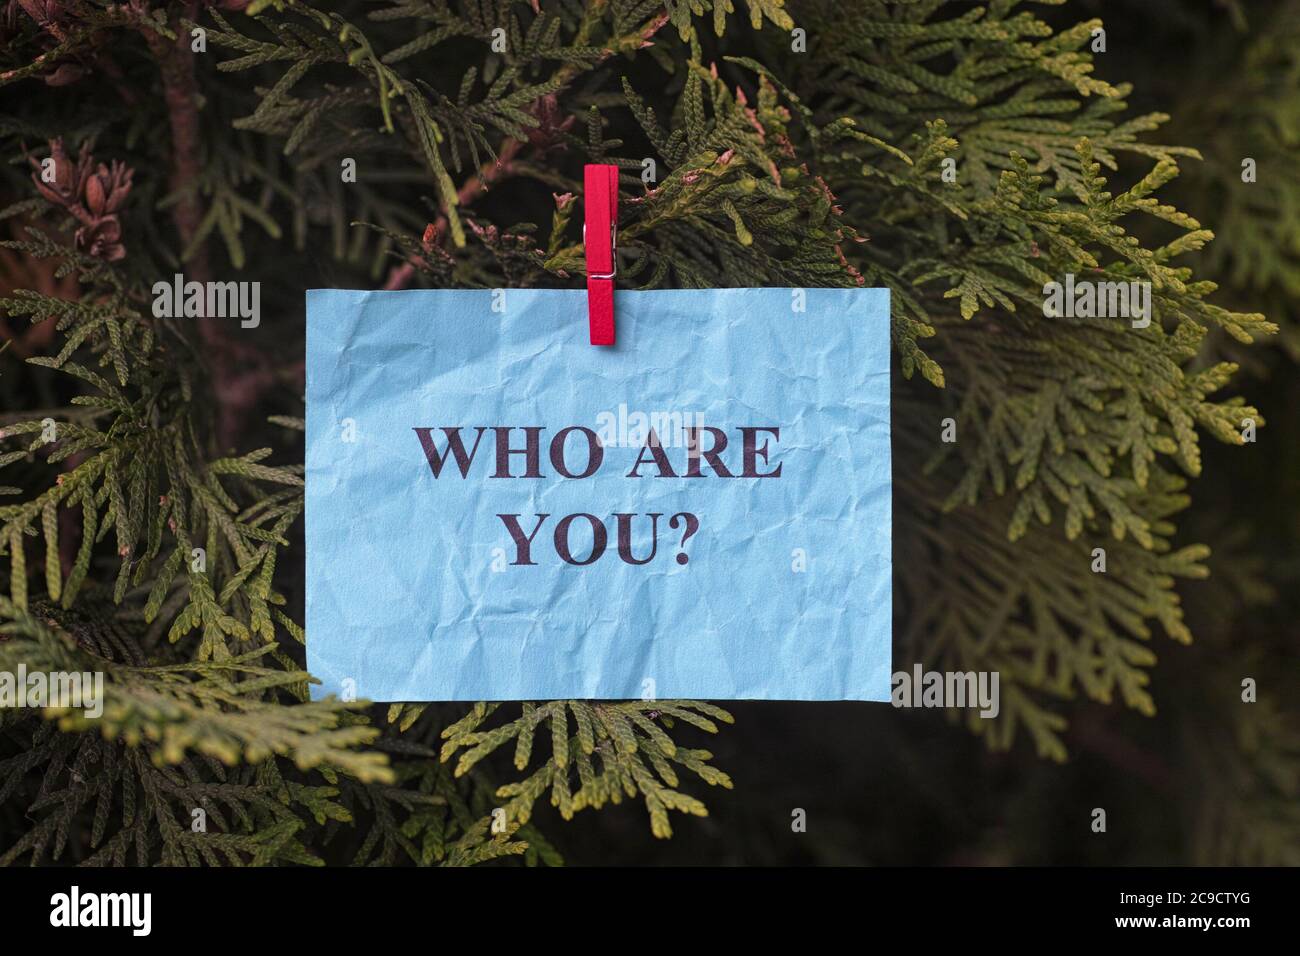 Domanda su chi sei appeso su un albero. Primo piano. Immagine concettuale. Foto Stock